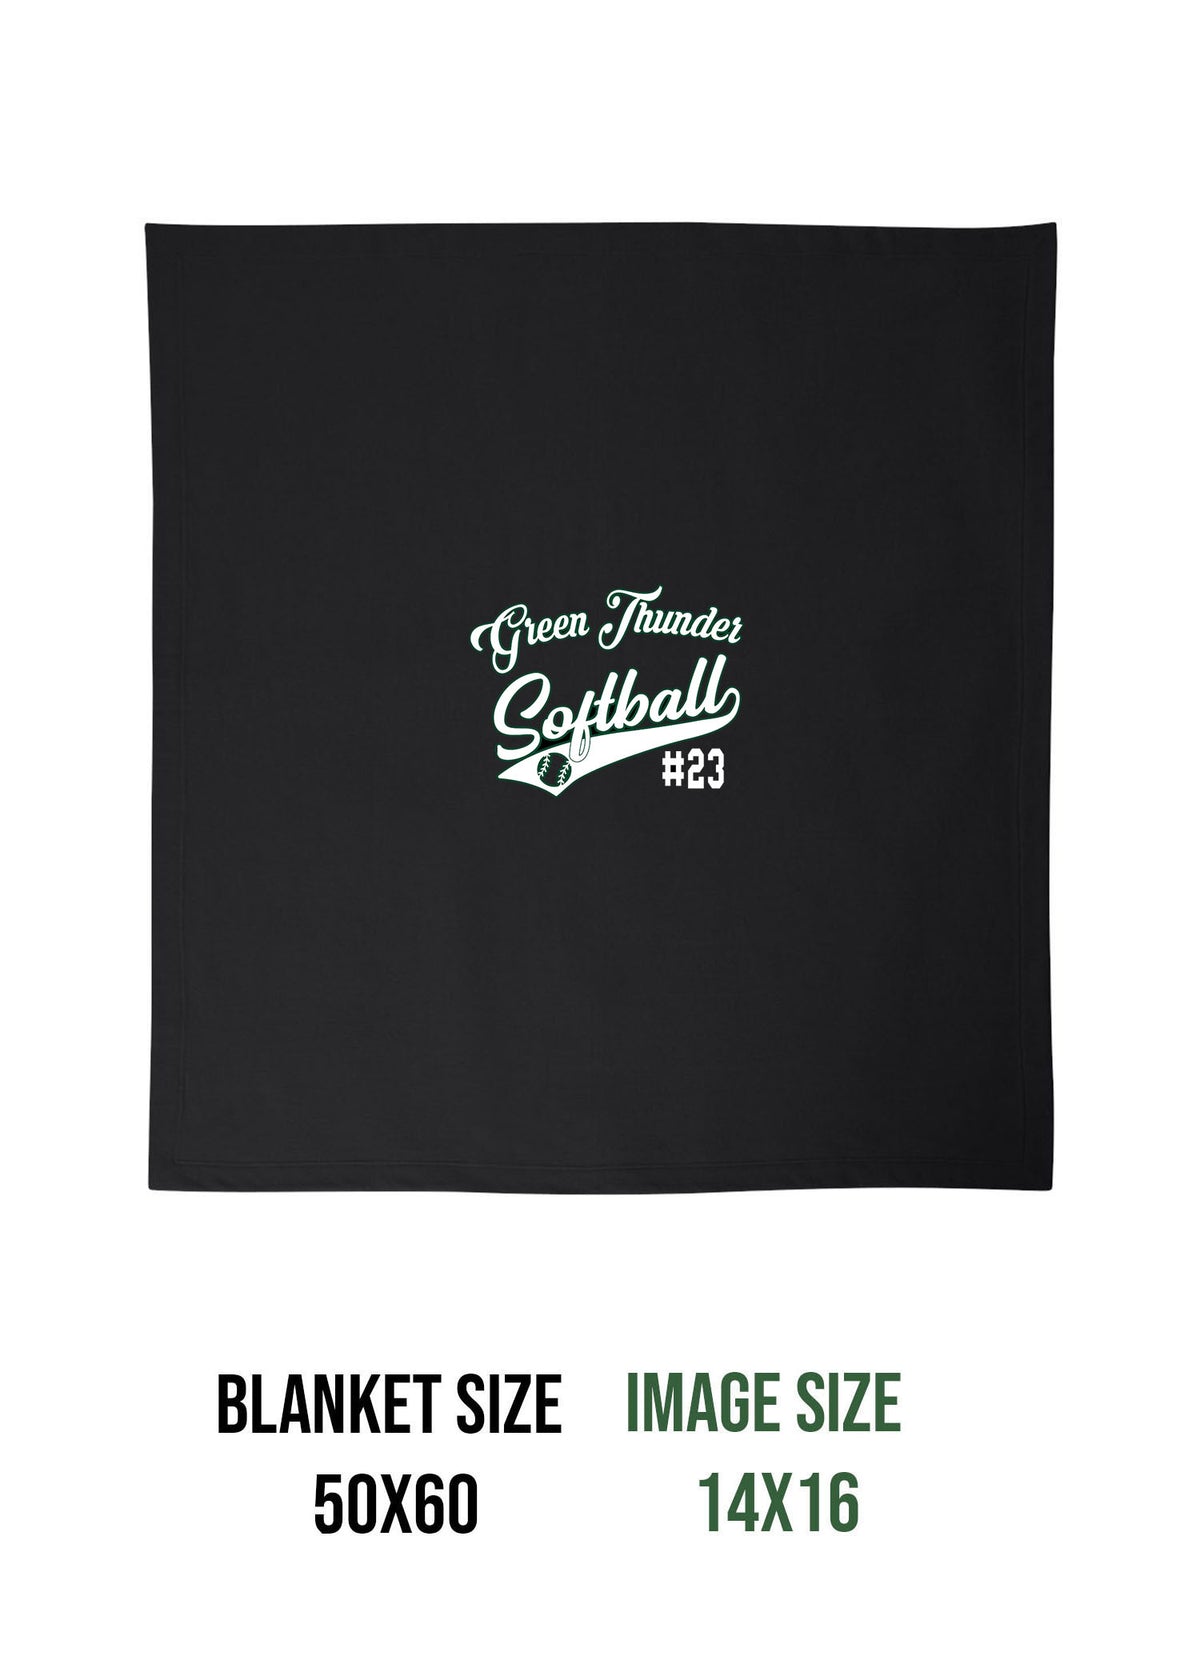 Green Thunder Design 2 Blanket